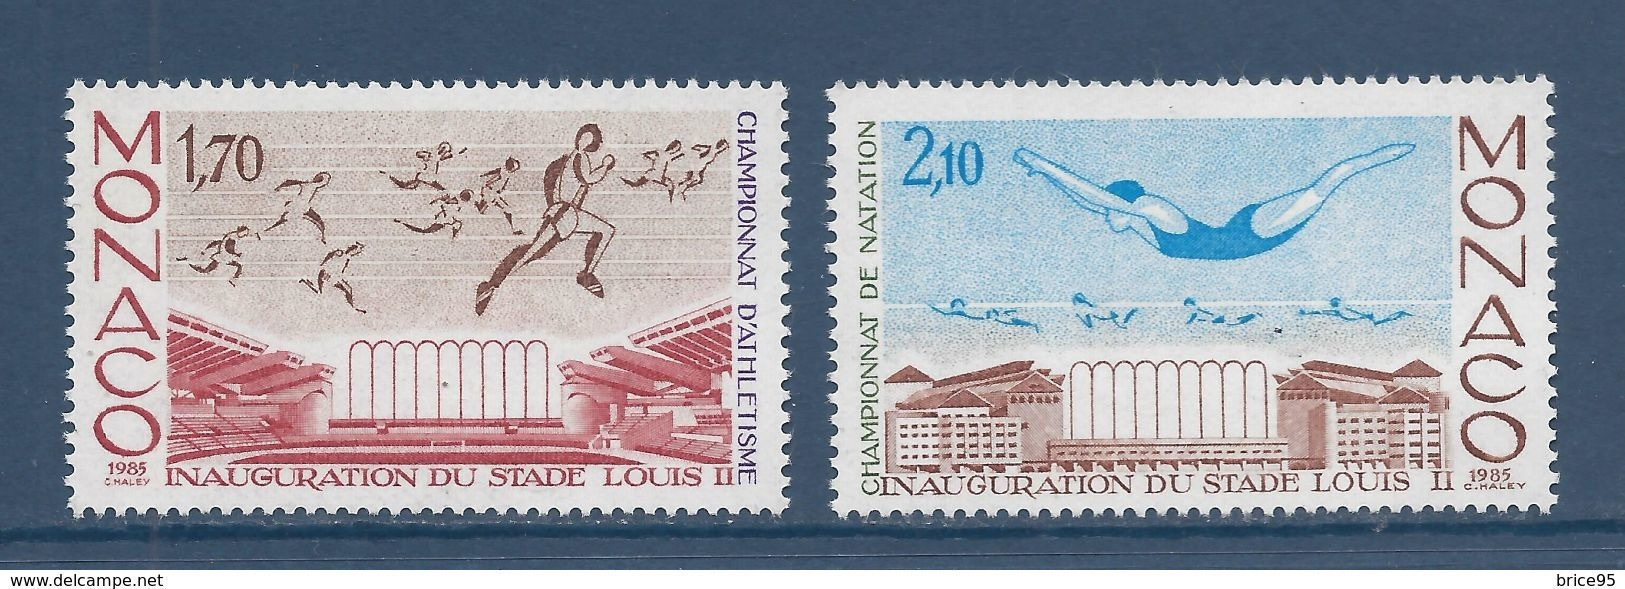 Monaco - YT N° 1475 Et 1476 ** - Neuf Sans Charnière - 1985 - Unused Stamps